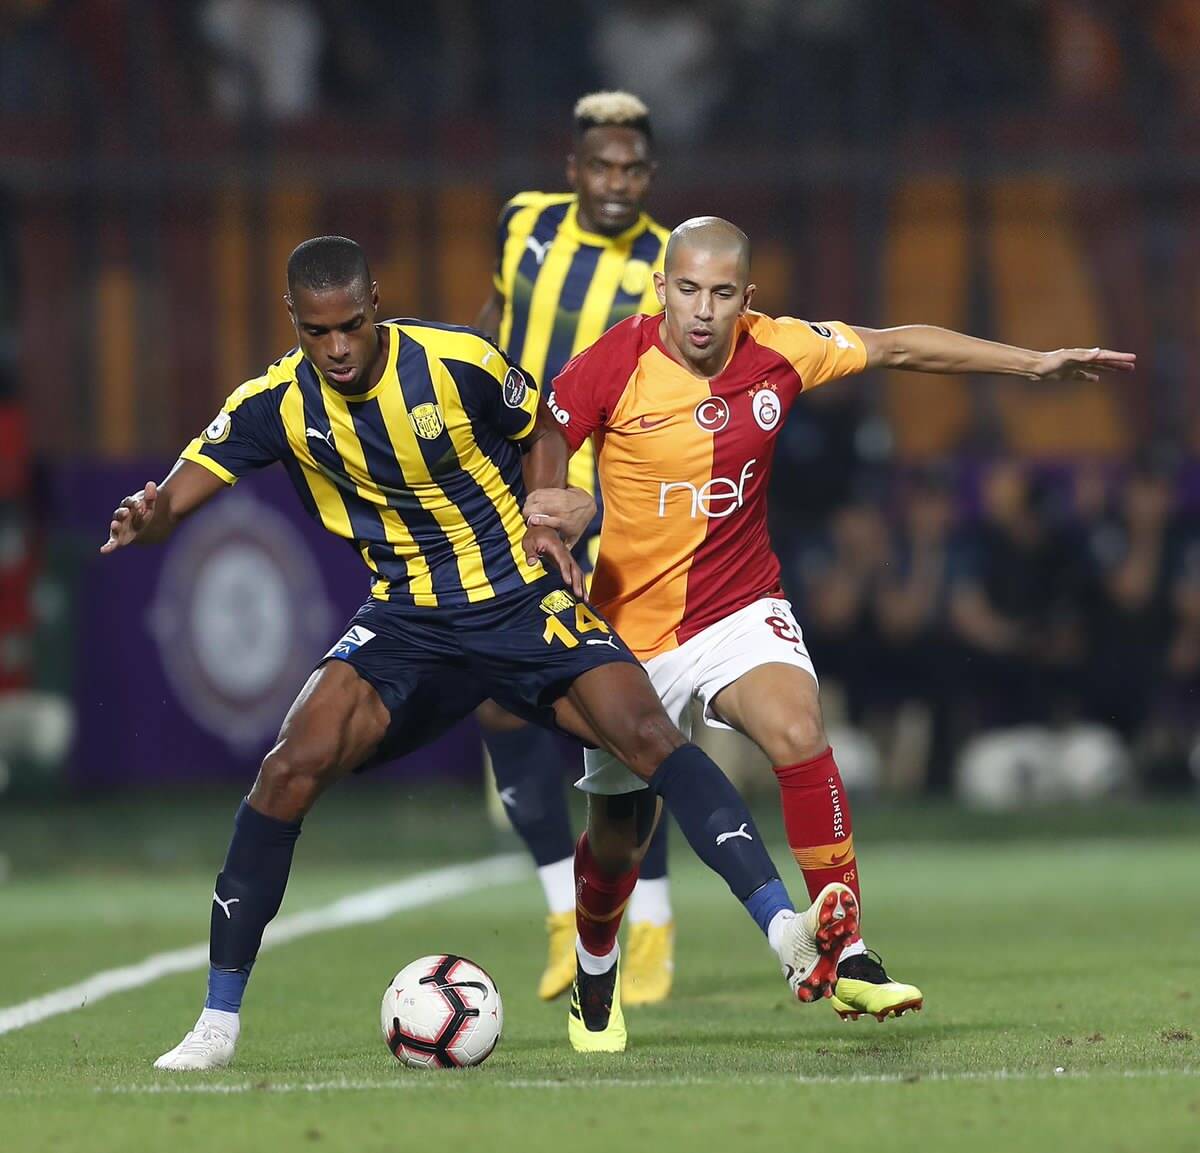 فيغولي يستهل حملة الدفاع عن لقب الدوري التركي بالفوز على أنقرة 1